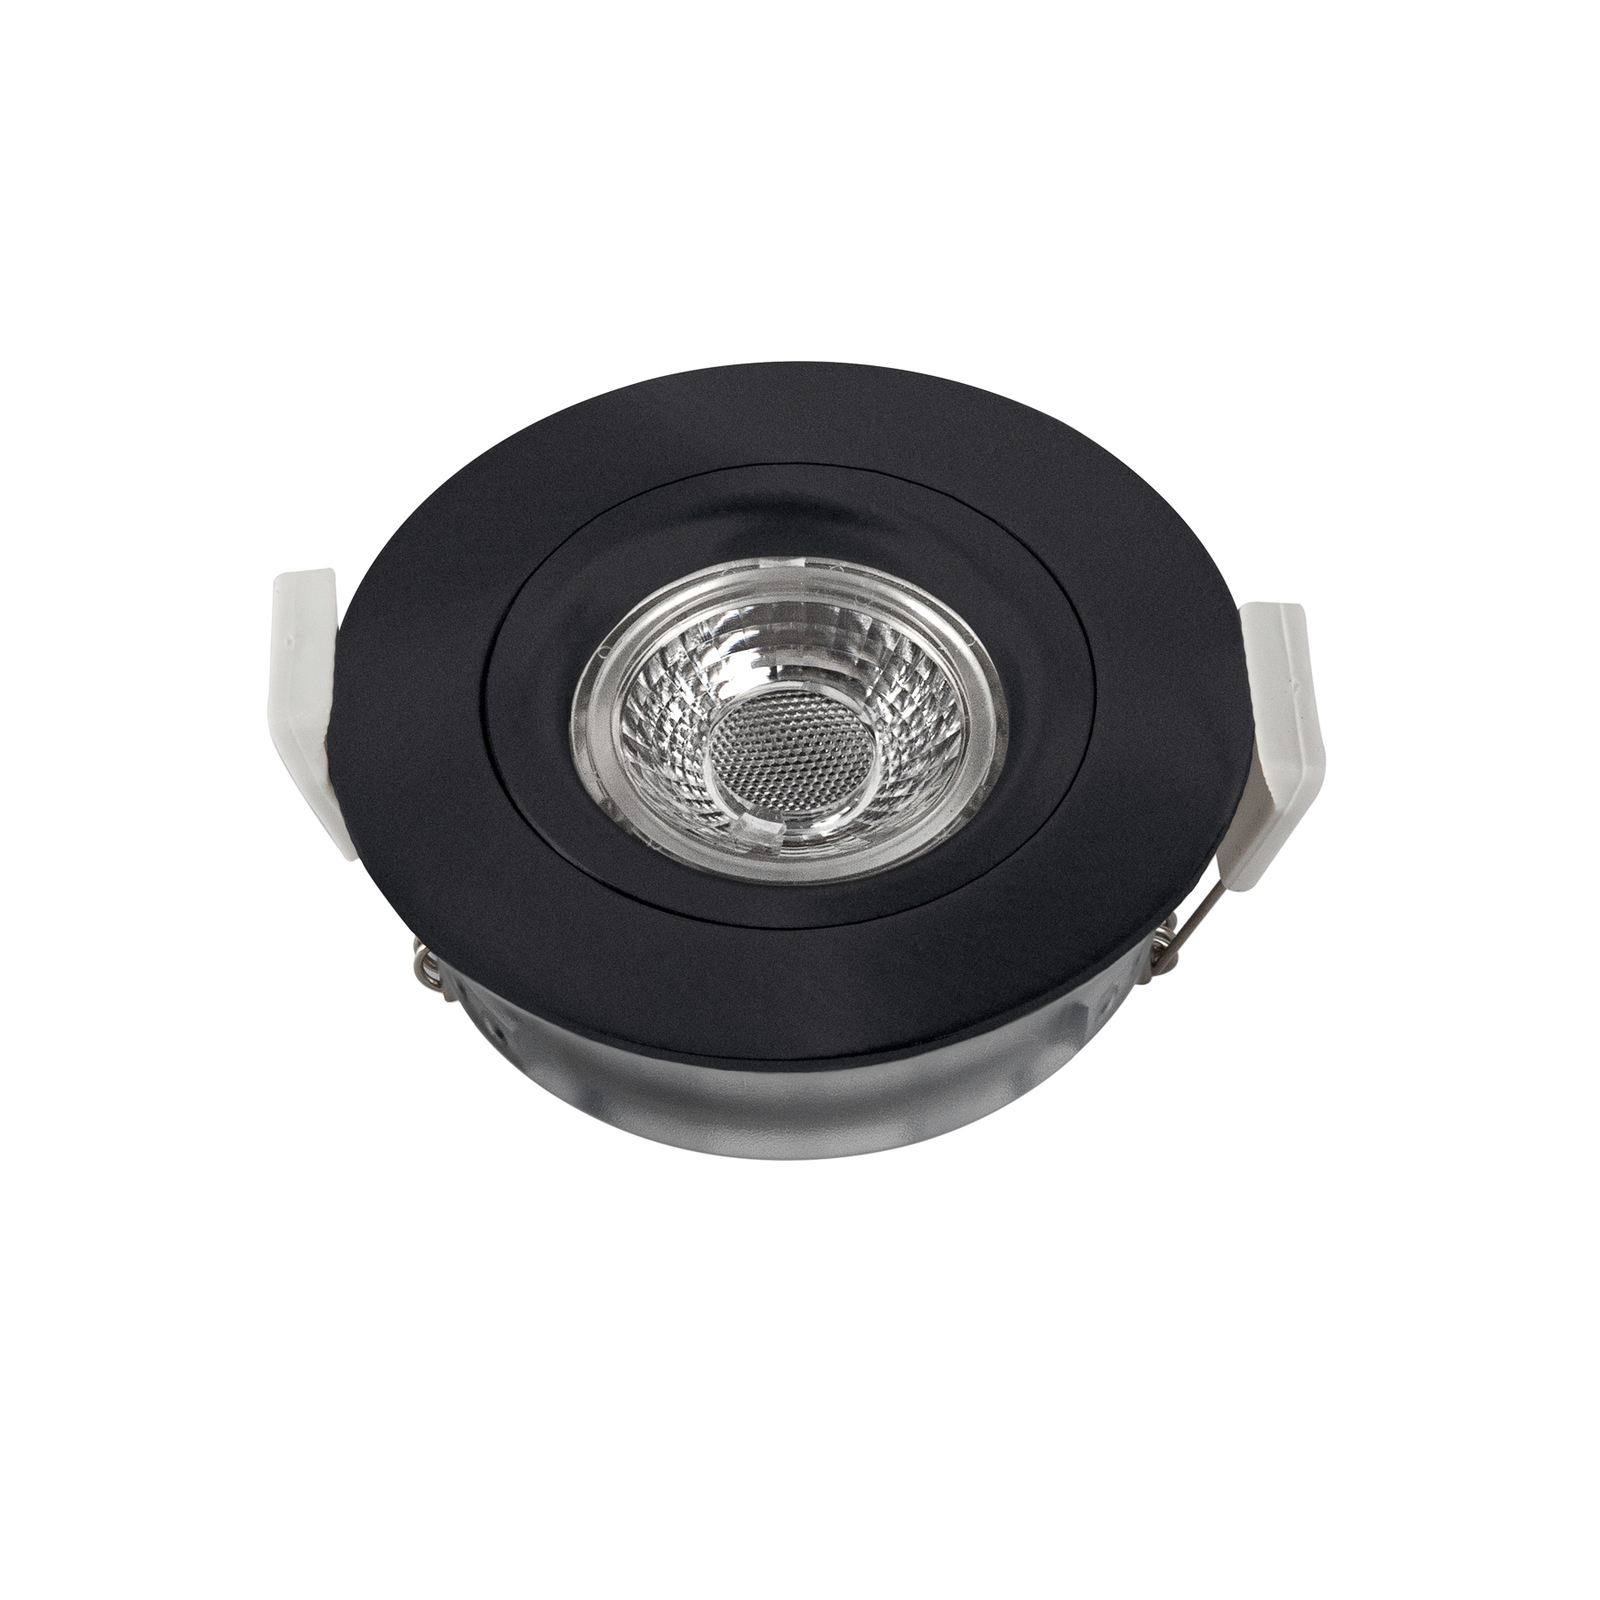 LED-Deckeneinbaustrahler DL6809, rund, schwarz